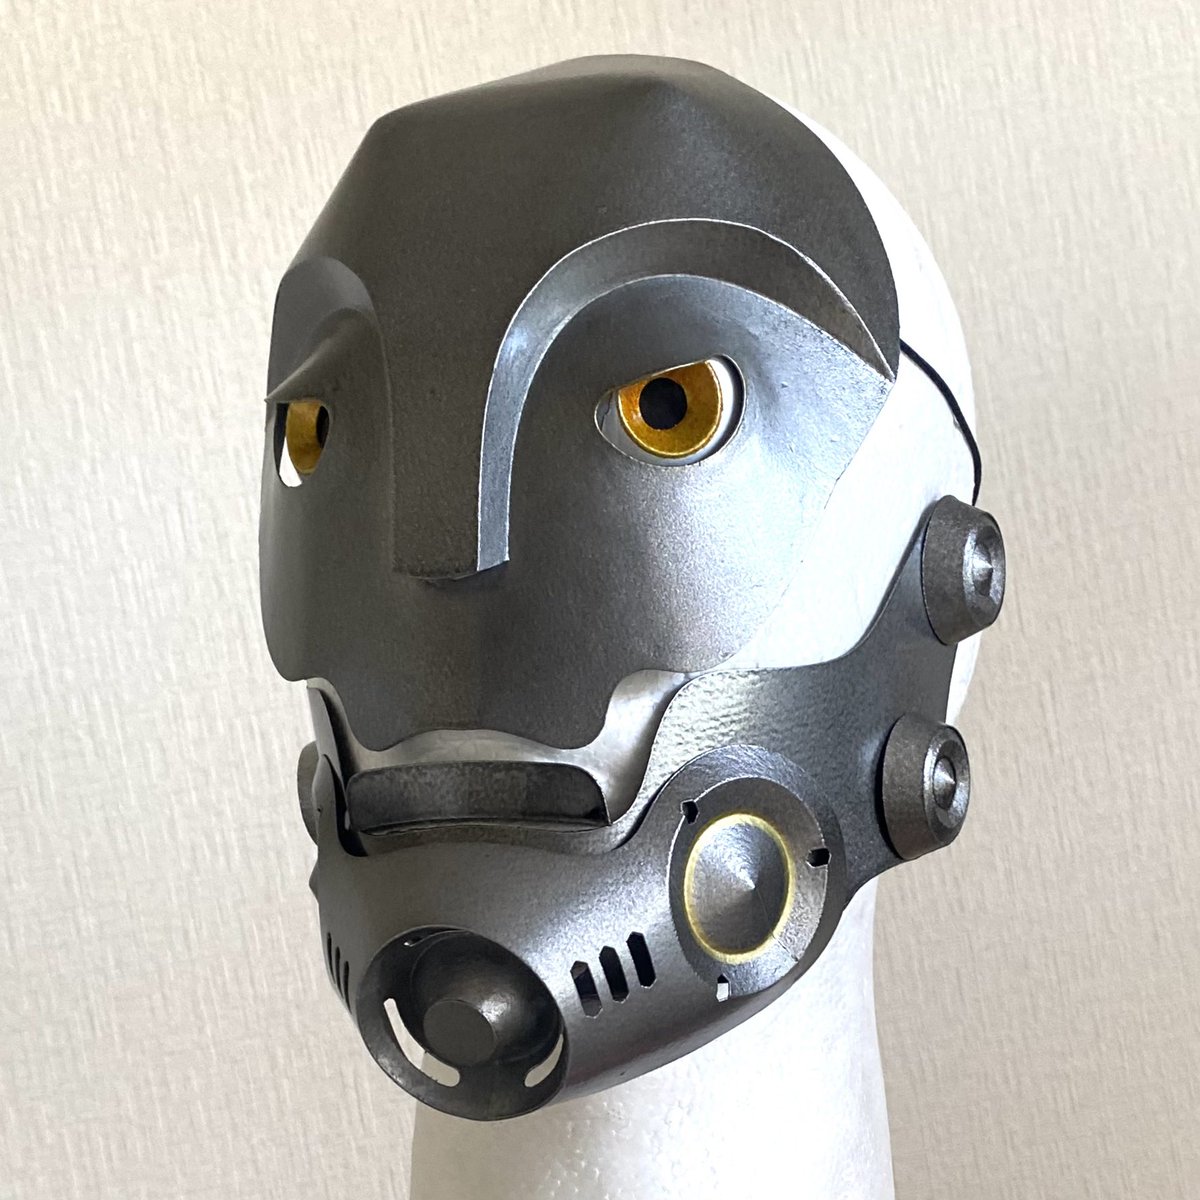 「サイボーグ面のゴム紐を隠すボタンを4つつけた改造例。レトロなブリキ製ロボットの関」|Takeo Hayashi ペーパークラフト作家のイラスト